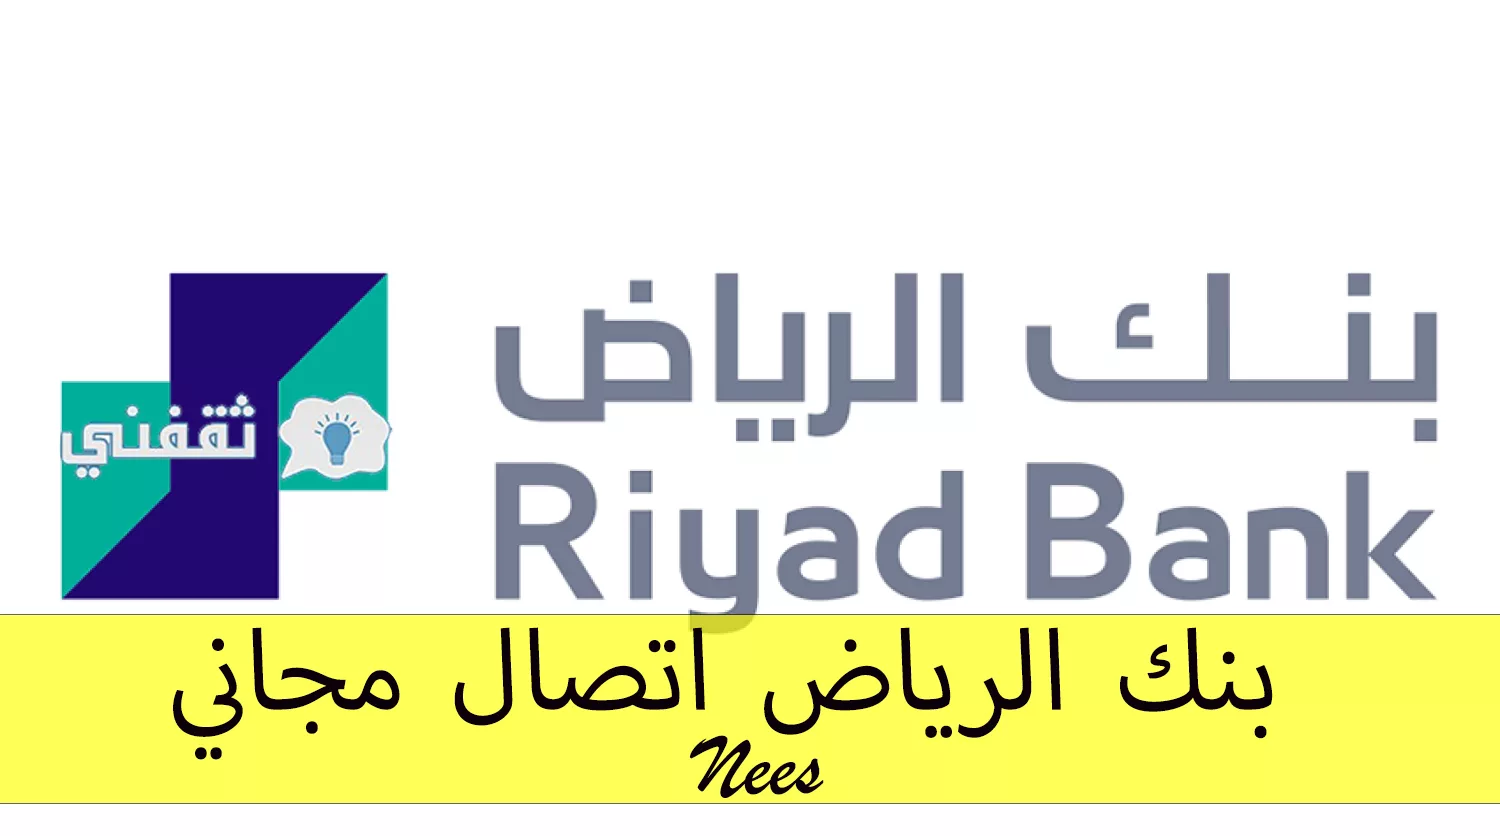 بنك الرياض 6 jpg - مدونة التقنية العربية